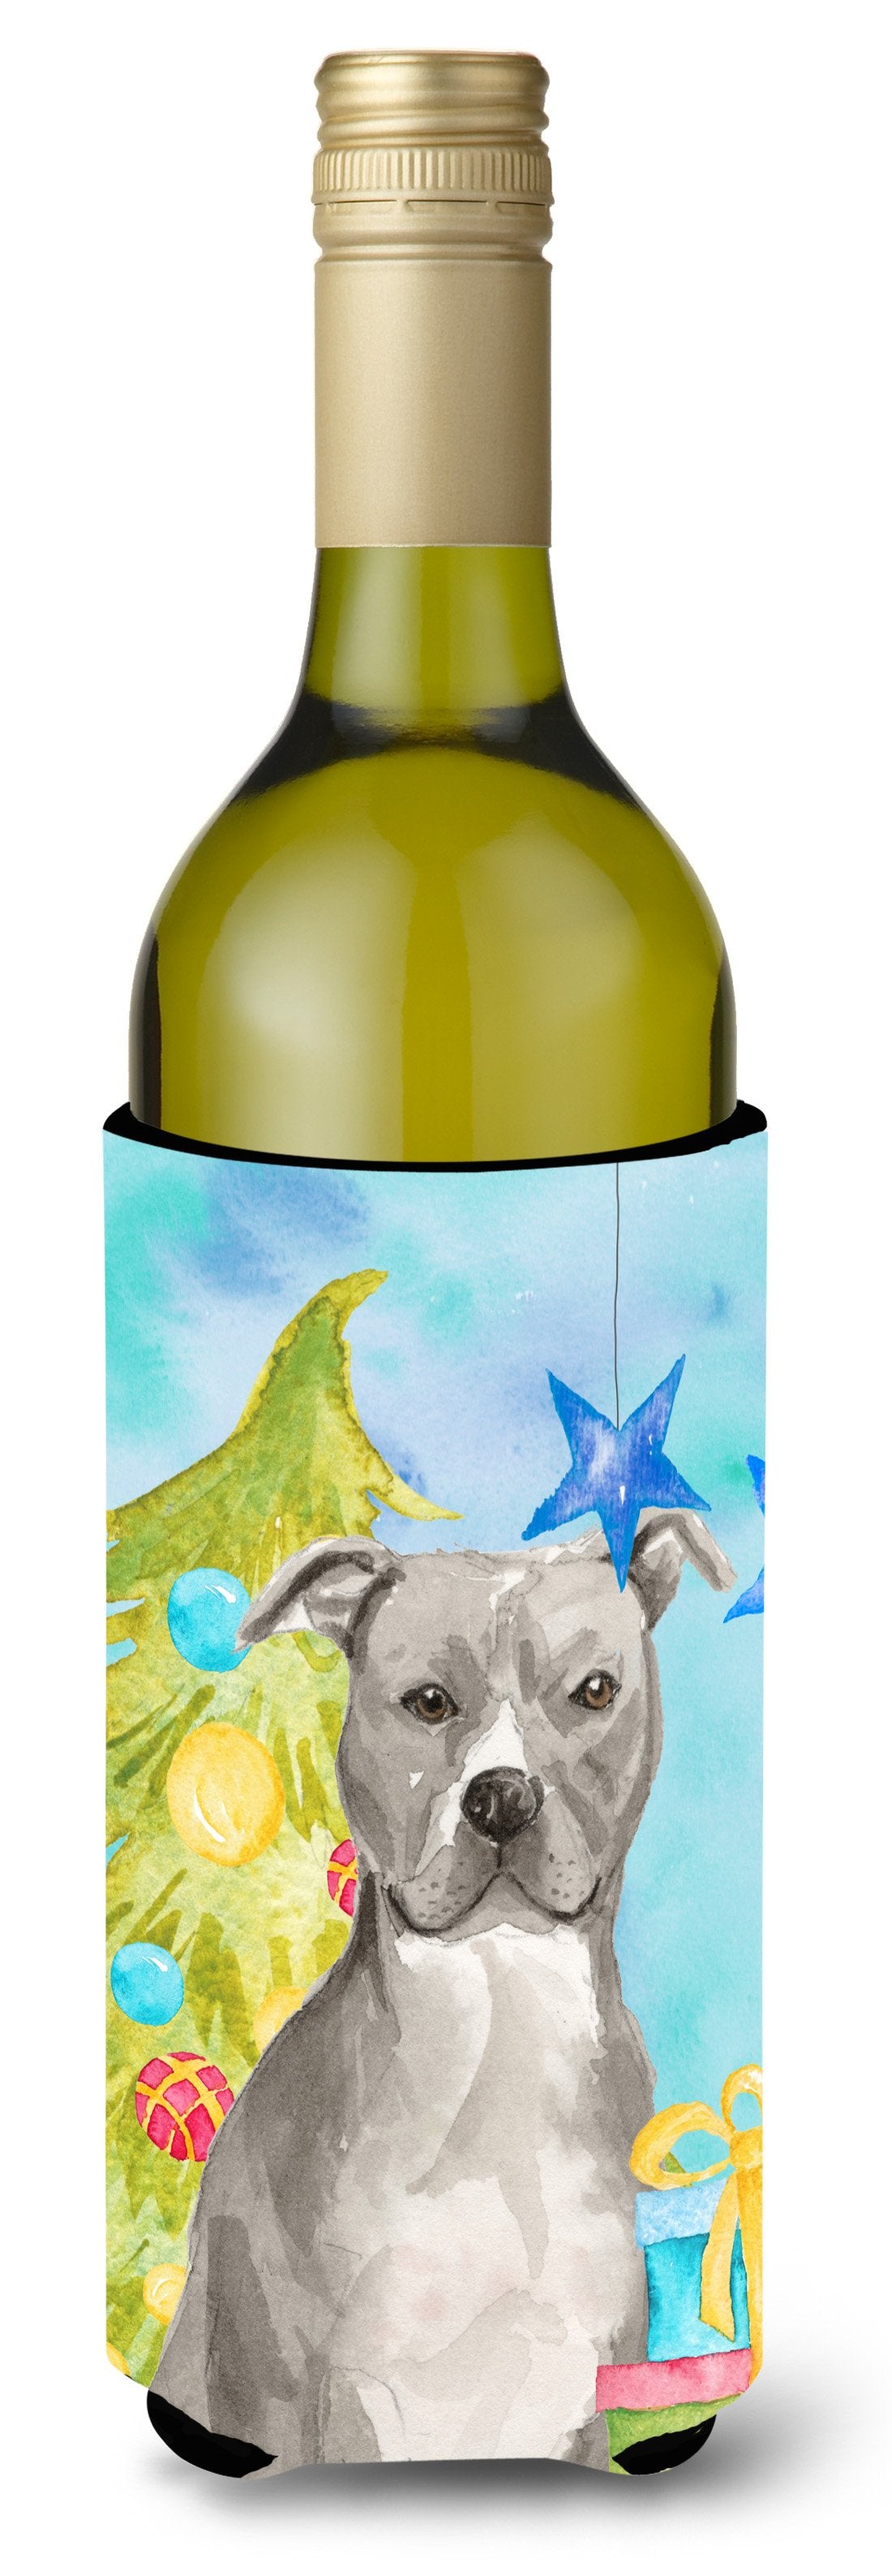 Staffordshire Bull Terrier Christmas Wine Bottle Beverge Insulator Hugger BB9395LITERK by Caroline's Treasures